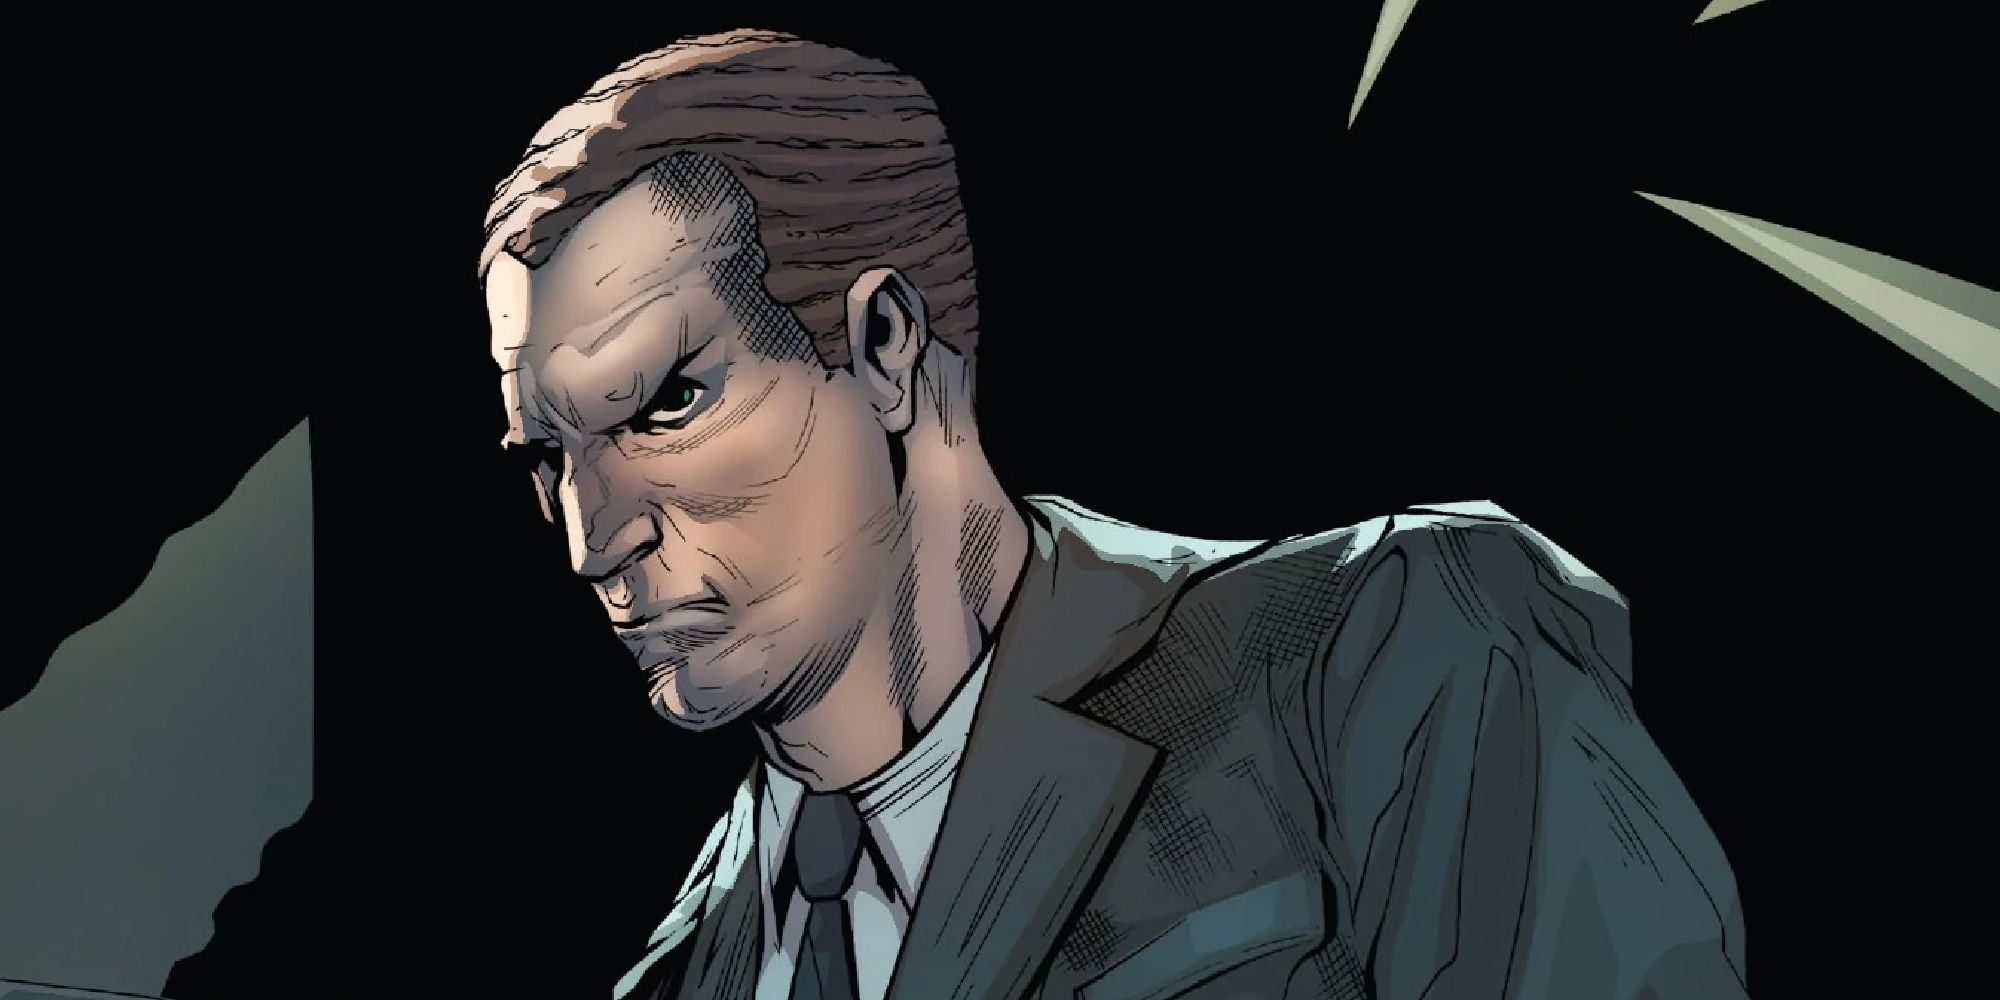 Norman Osborn parado no escuro fazendo uma careta